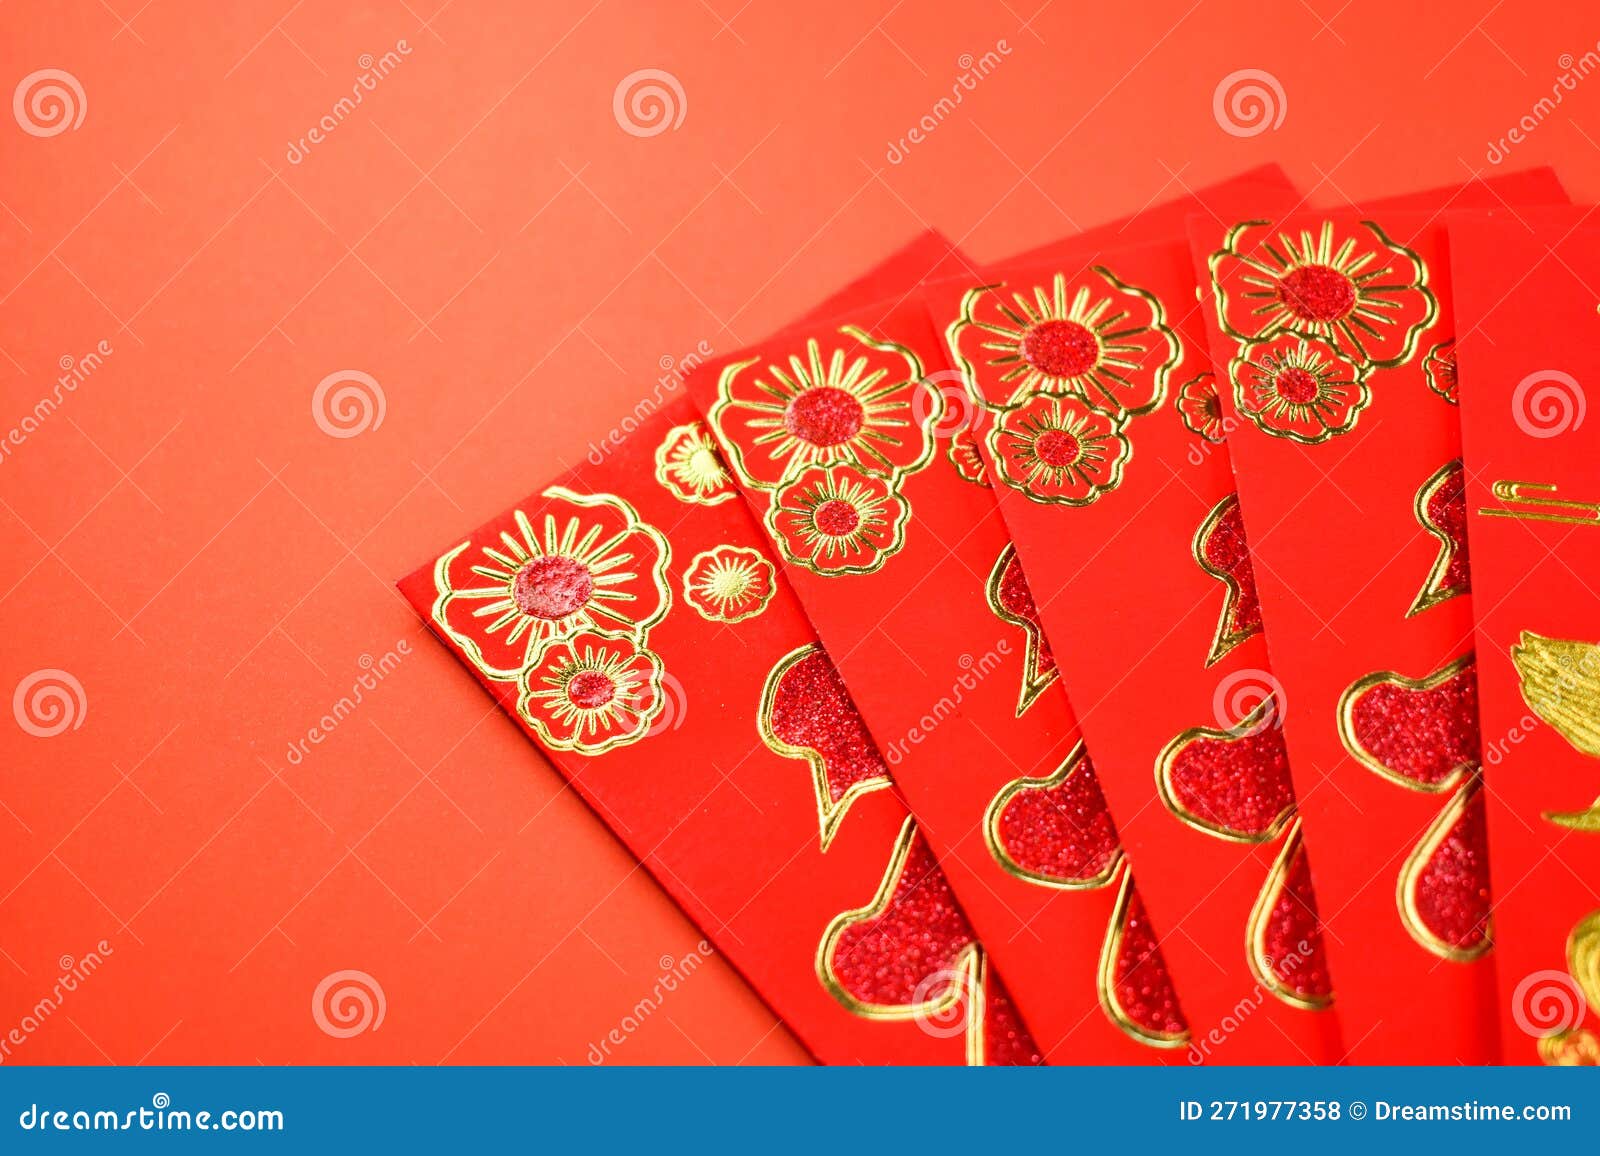 Enveloppe Rouge Pour La Journée Chinoise Sur Fond Rouge Photo stock - Image  du culture, cérémonie: 271977358